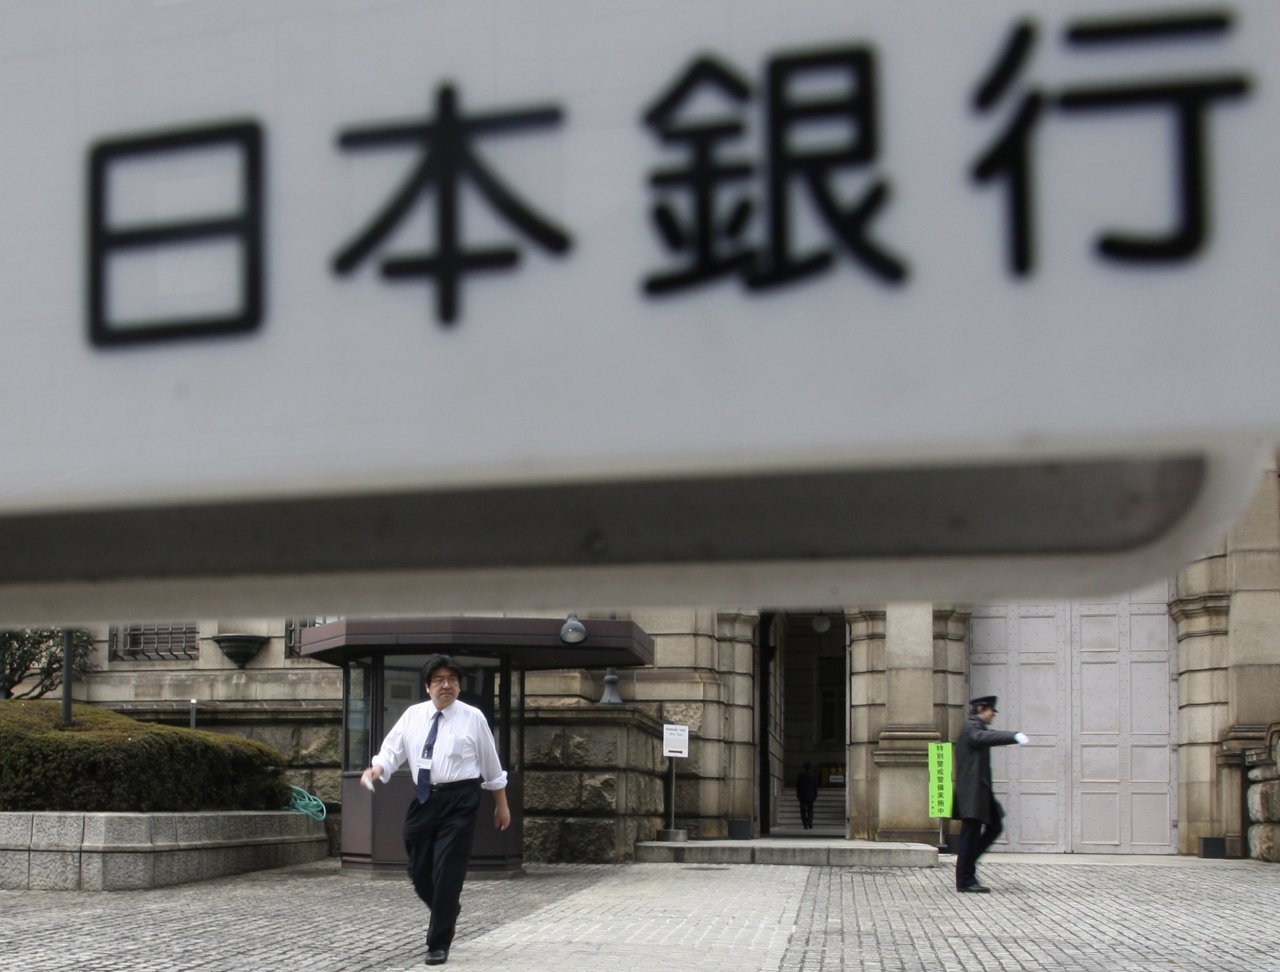 美歐升息抑制通膨 日本央行仍維持寬鬆政策